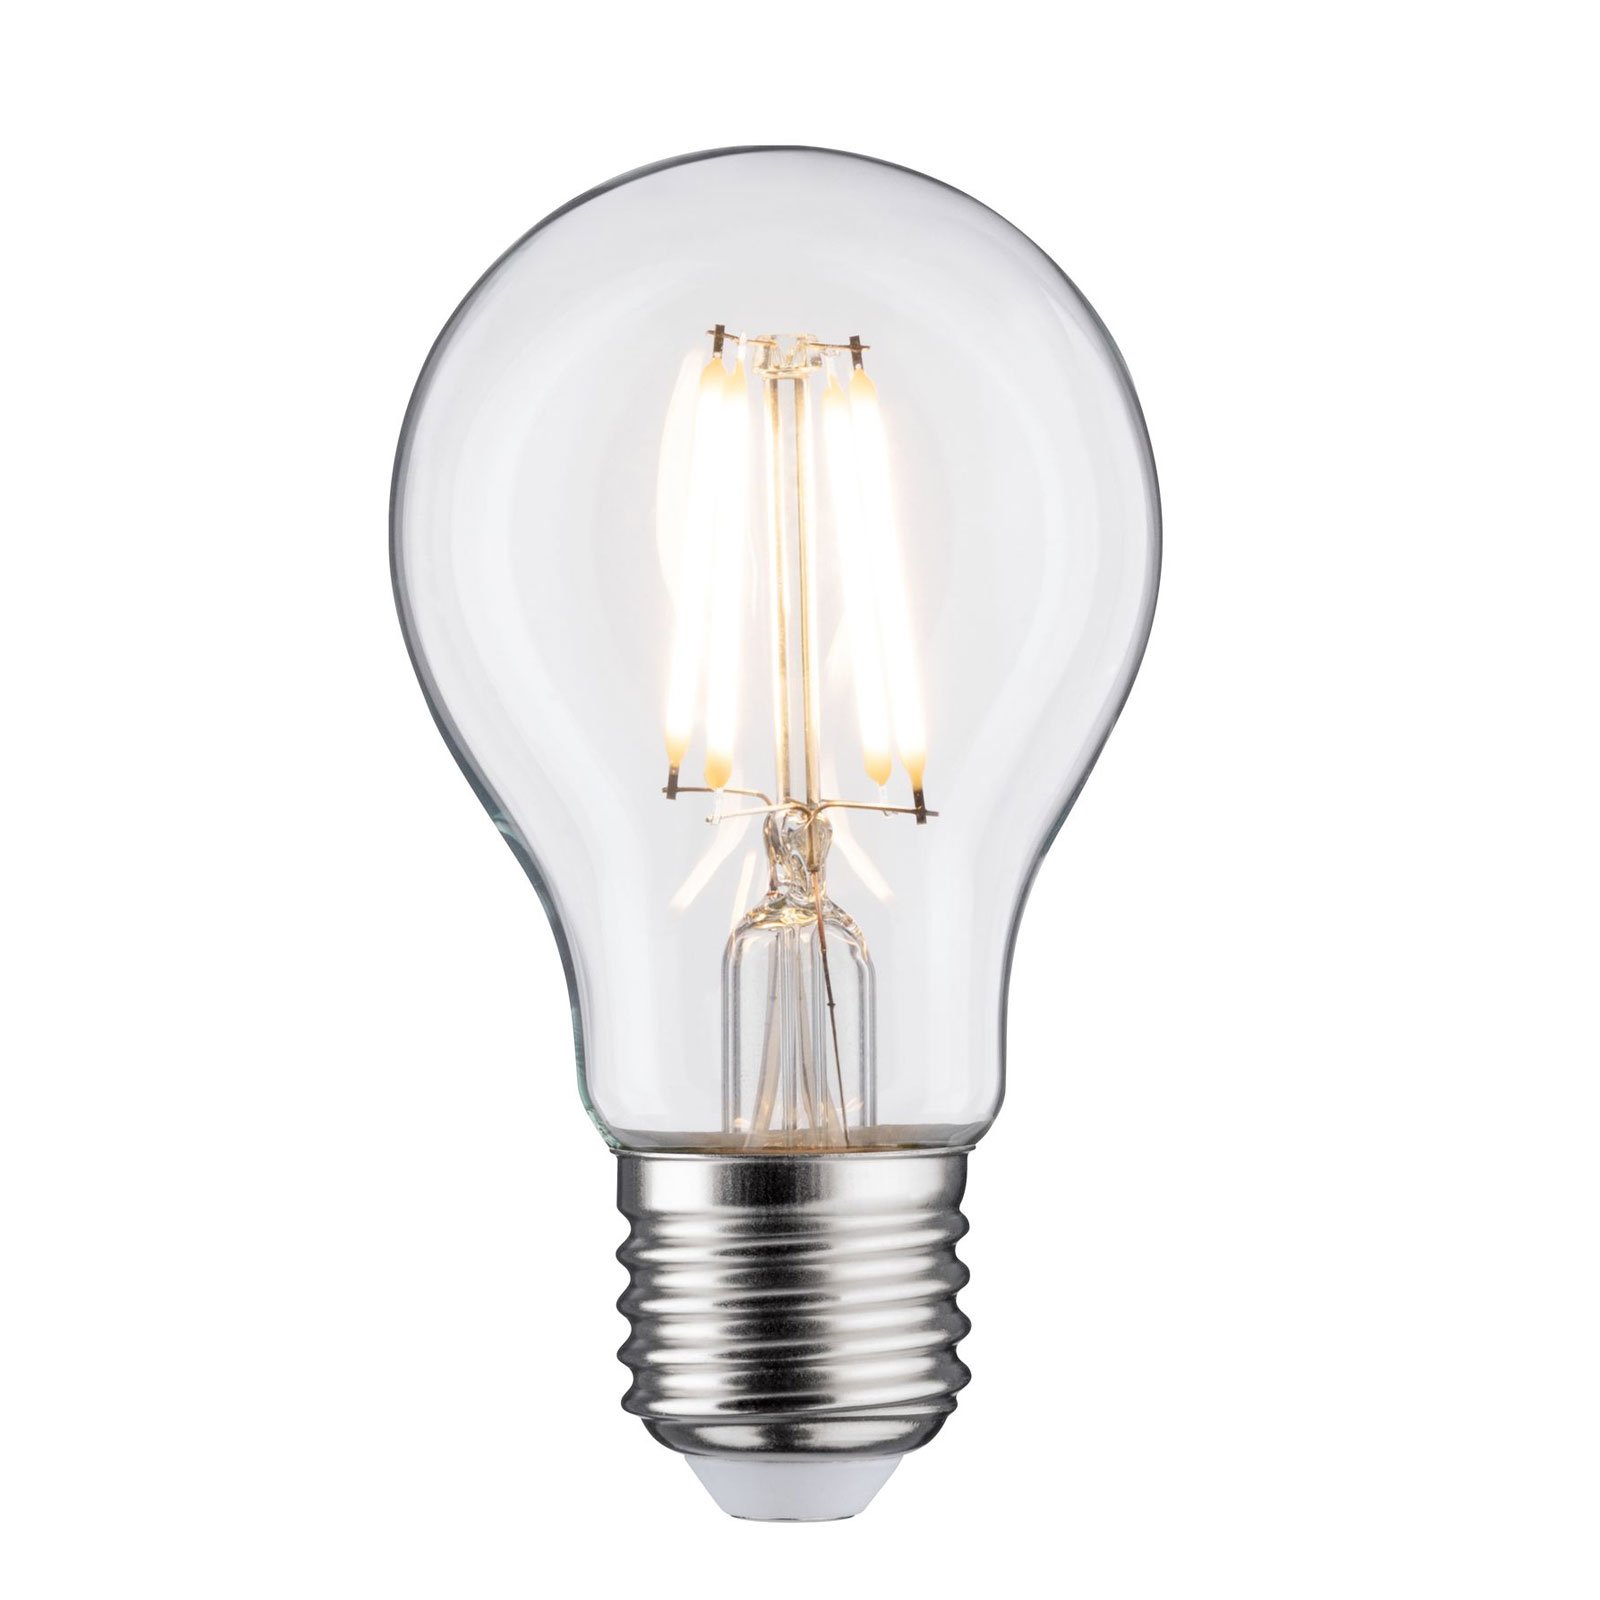 LED lamp E27 5W hõõgniit 2700K läbipaistev timmitav